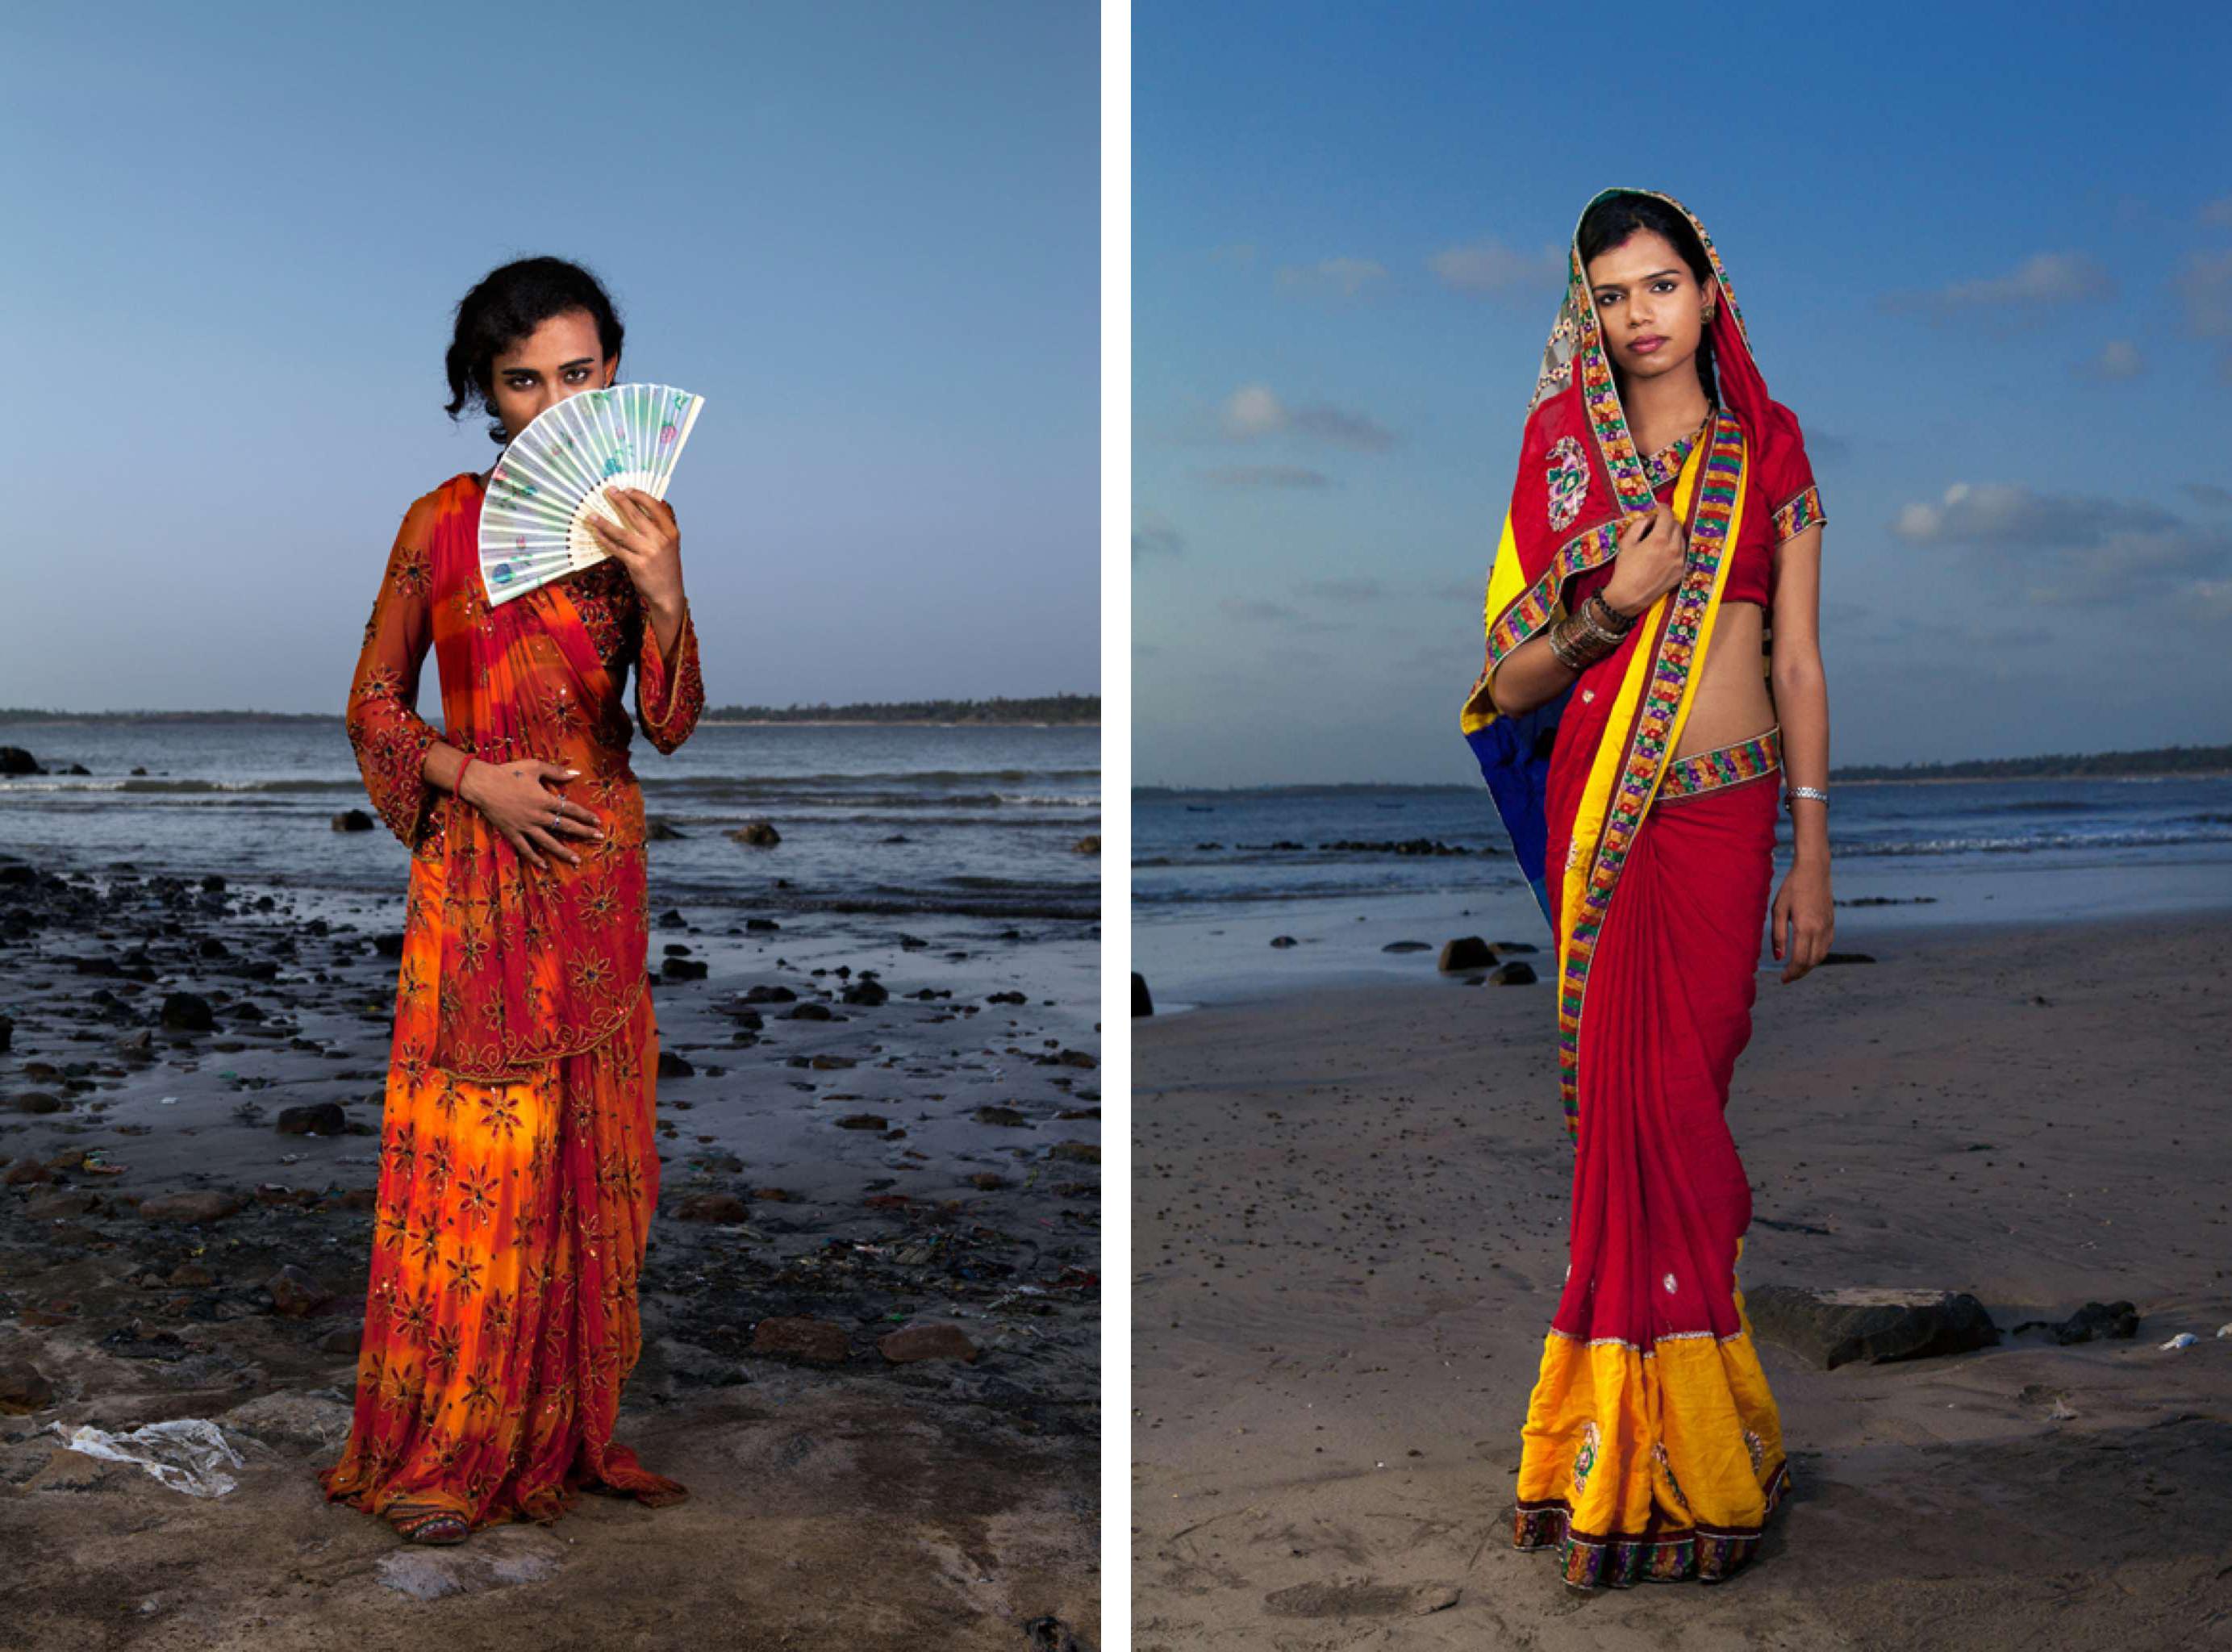 Jill Peters Color Photograph – Vijay und Julie, Porträt. Aus der Serie The Third Gender of India